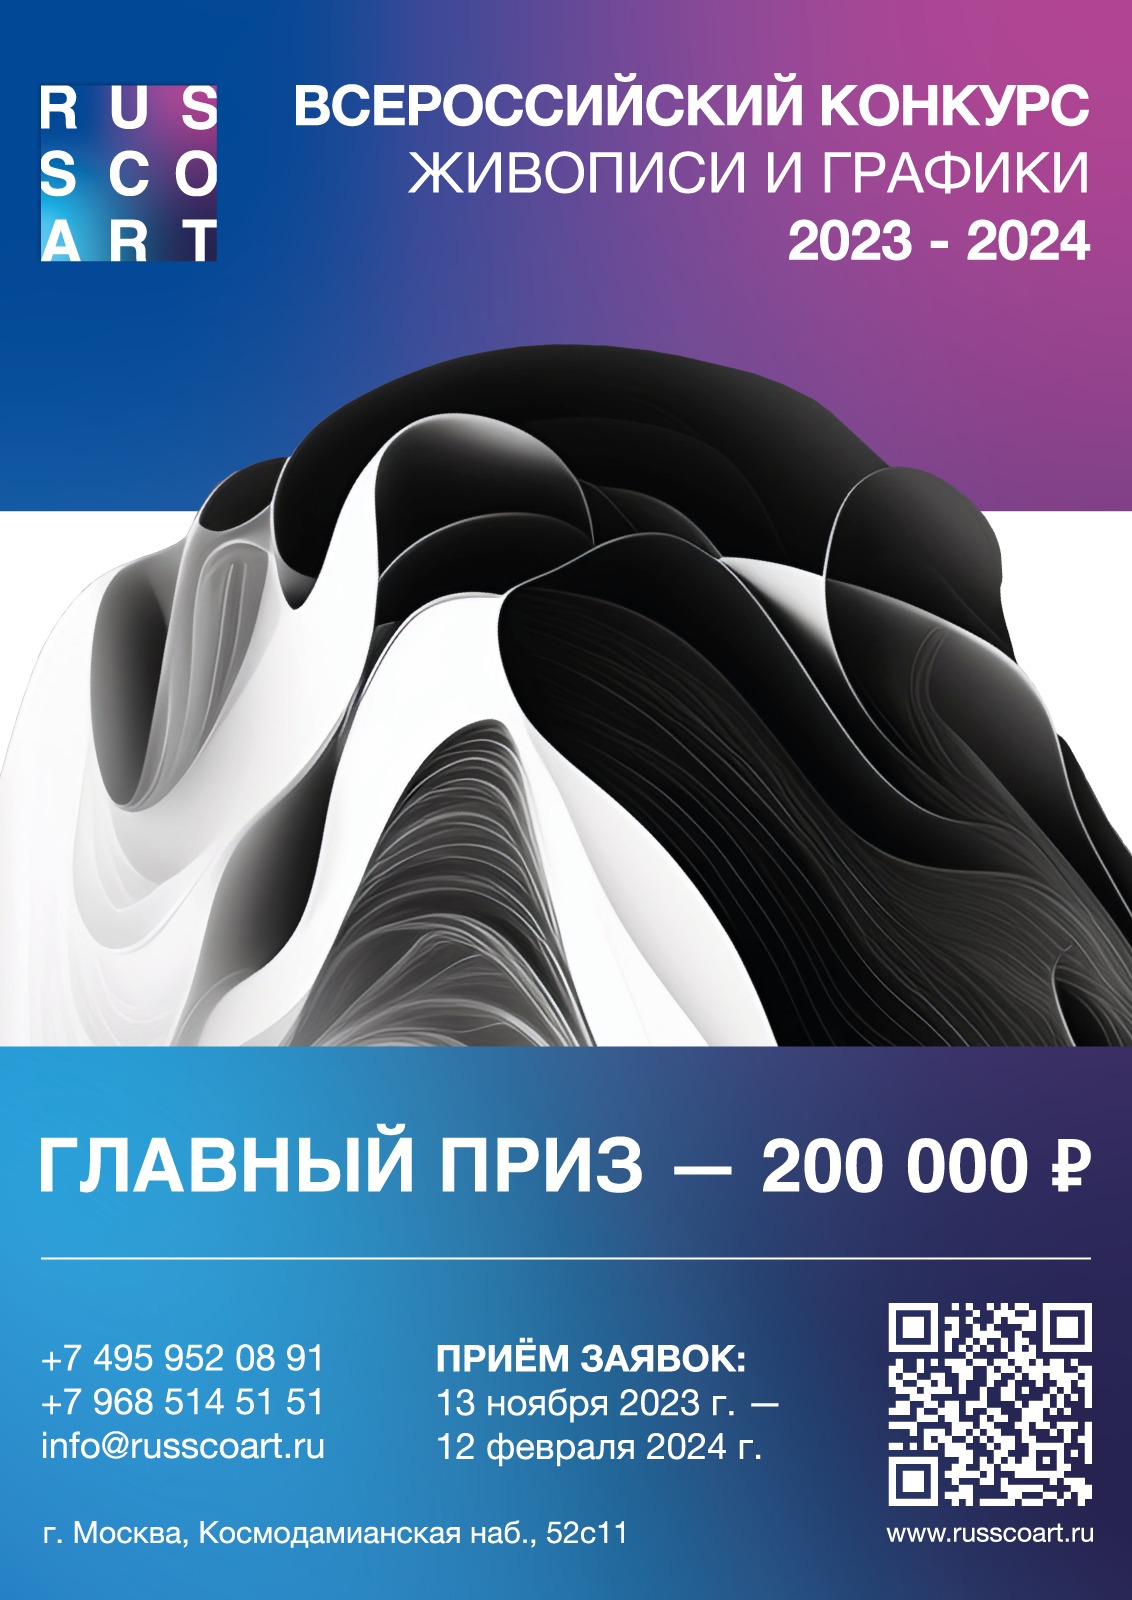 Всероссийский конкурс по живописи и графике RUSSCOART в рамках объединения Art-centre Exposed и ARS Gallery